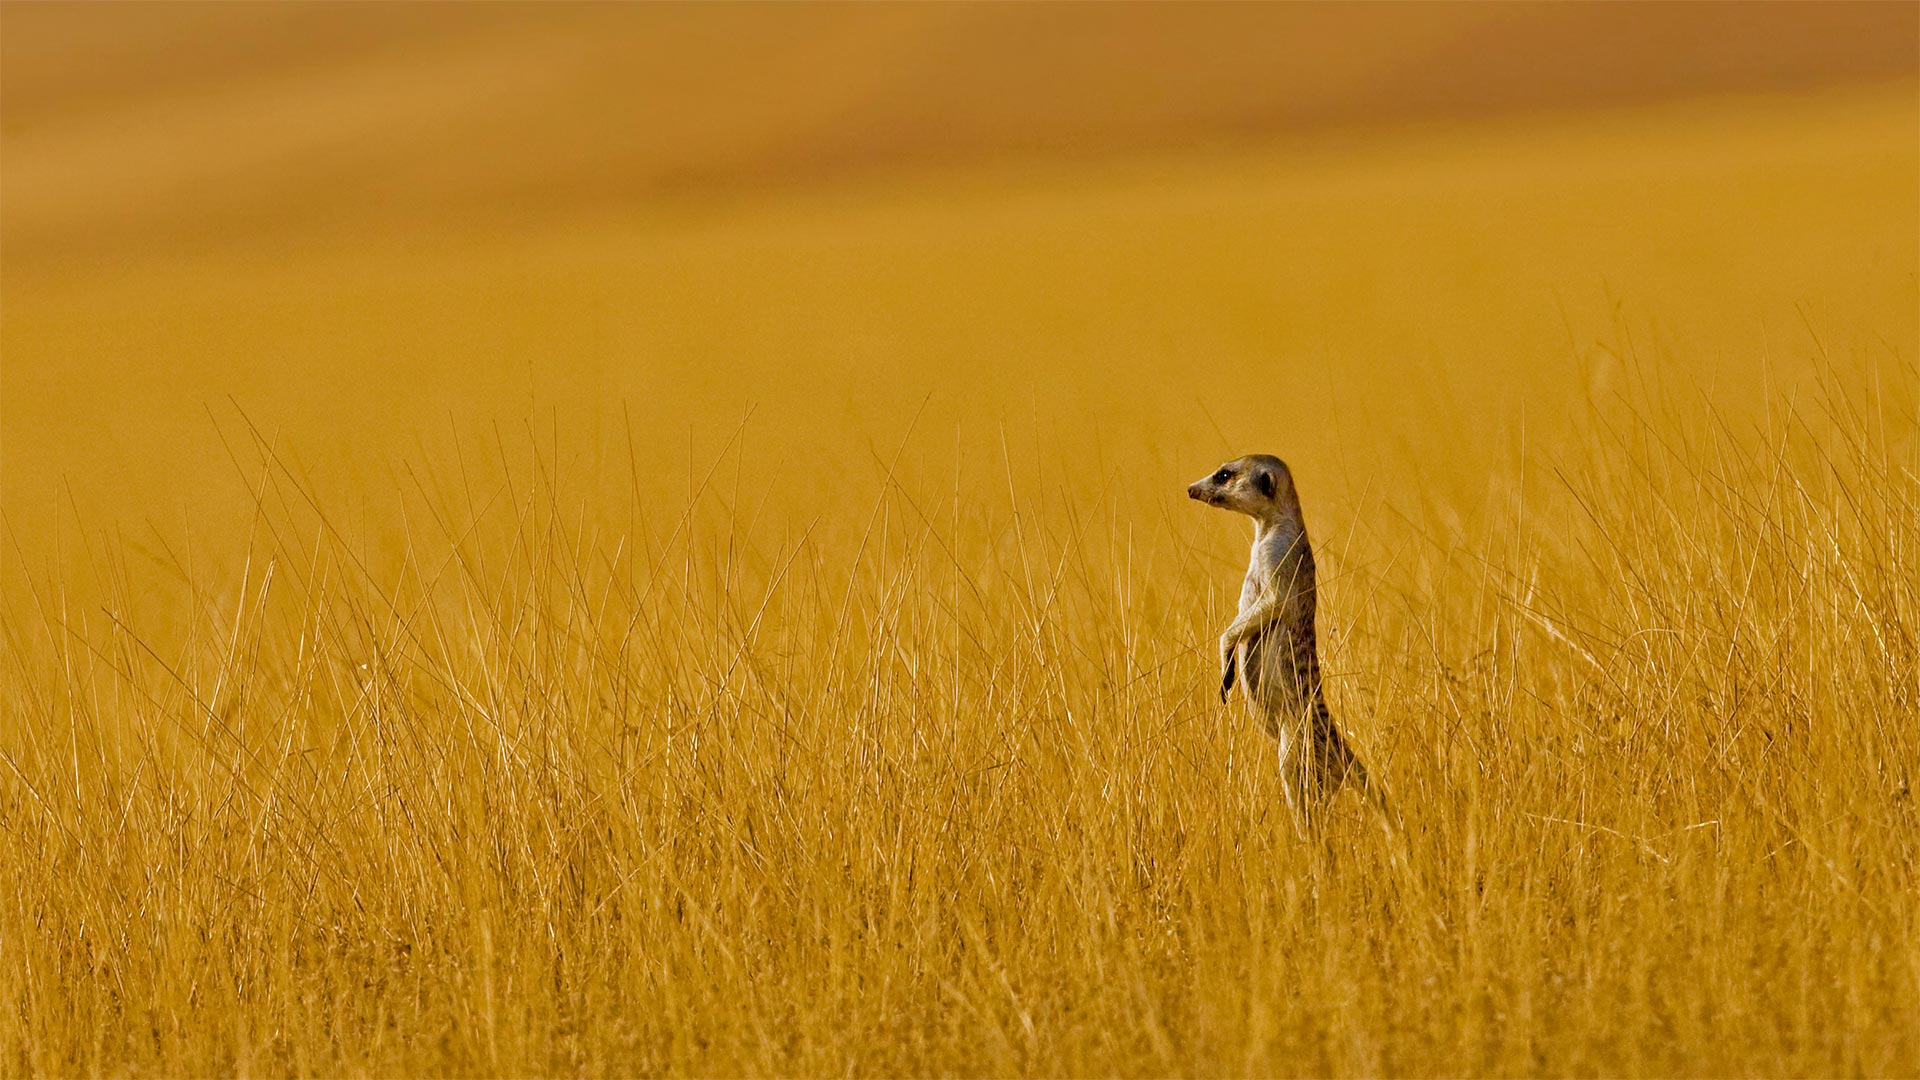 必应壁纸:A meerkat in Namibia (© Danita Delimont/Offset by Shutterstock)